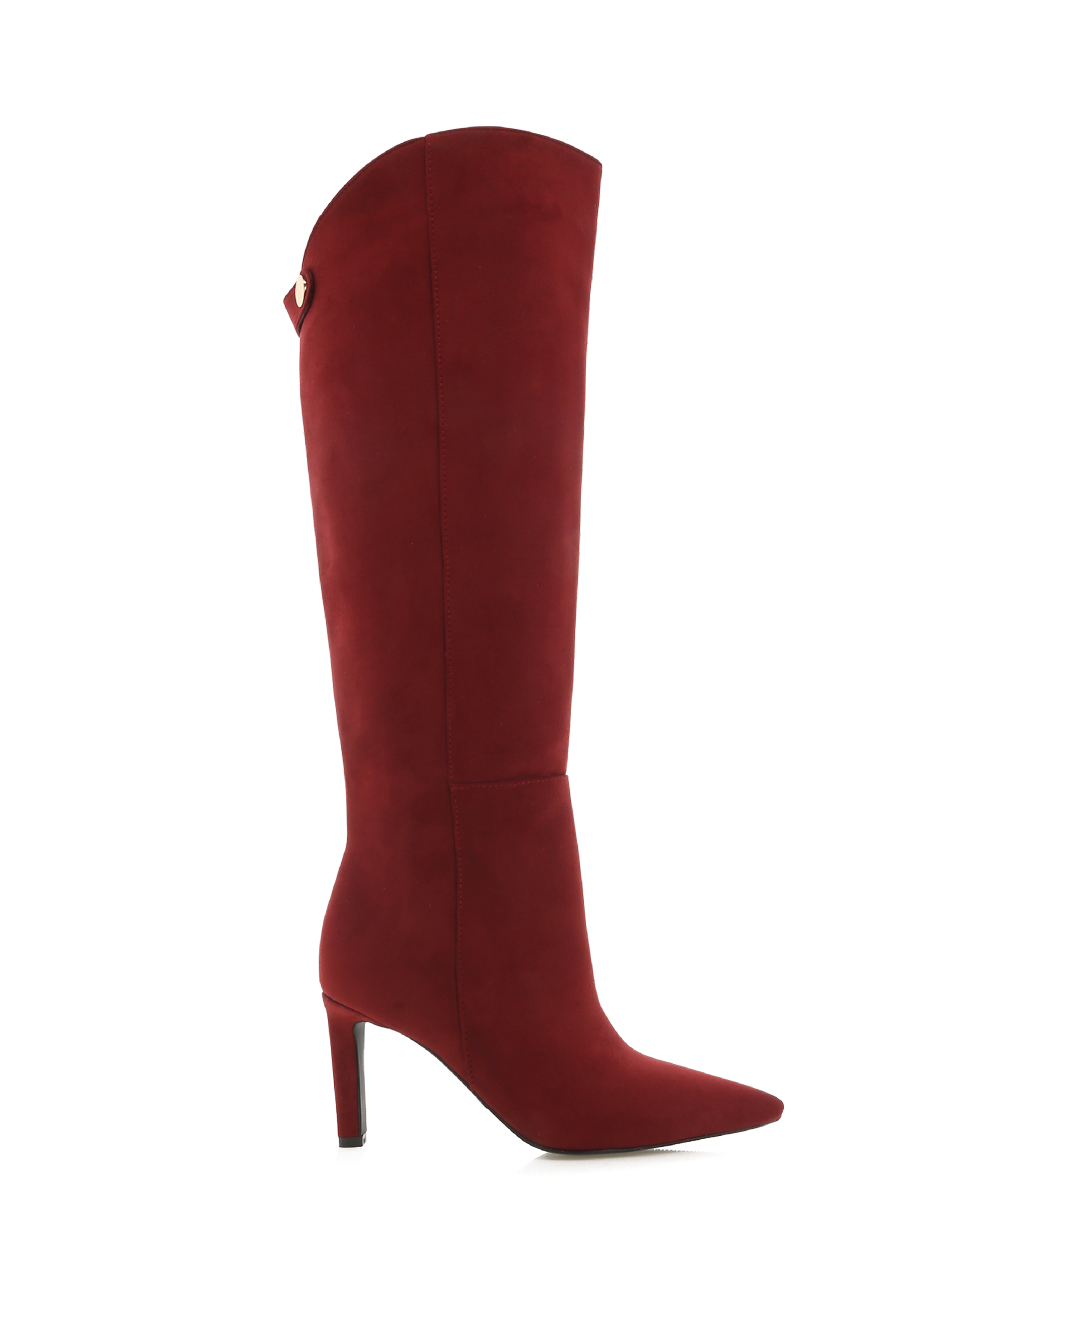 QUENNA - CHERRY RED SUEDE-Boots-Billini-Billini